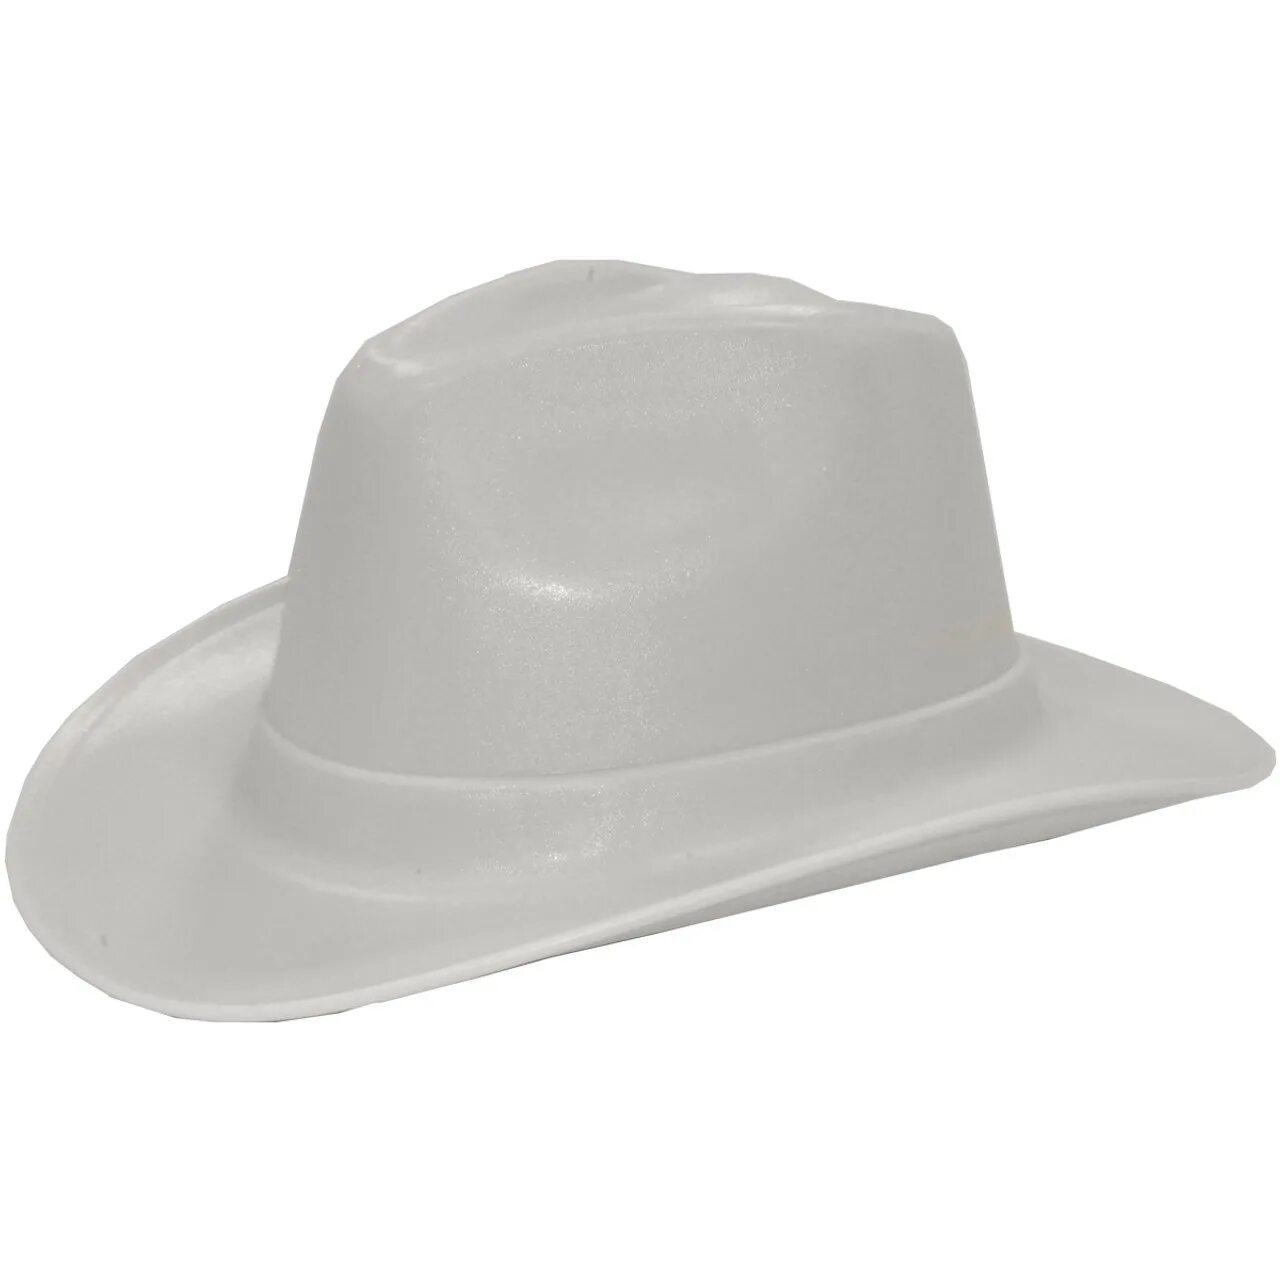 Каска ковбой. Vulka vcb100-00 hard hat строительная. Cowboy hat каска. Vulcan Cowboy Style hard hat White. Каска защитная ковбойская шляпа.